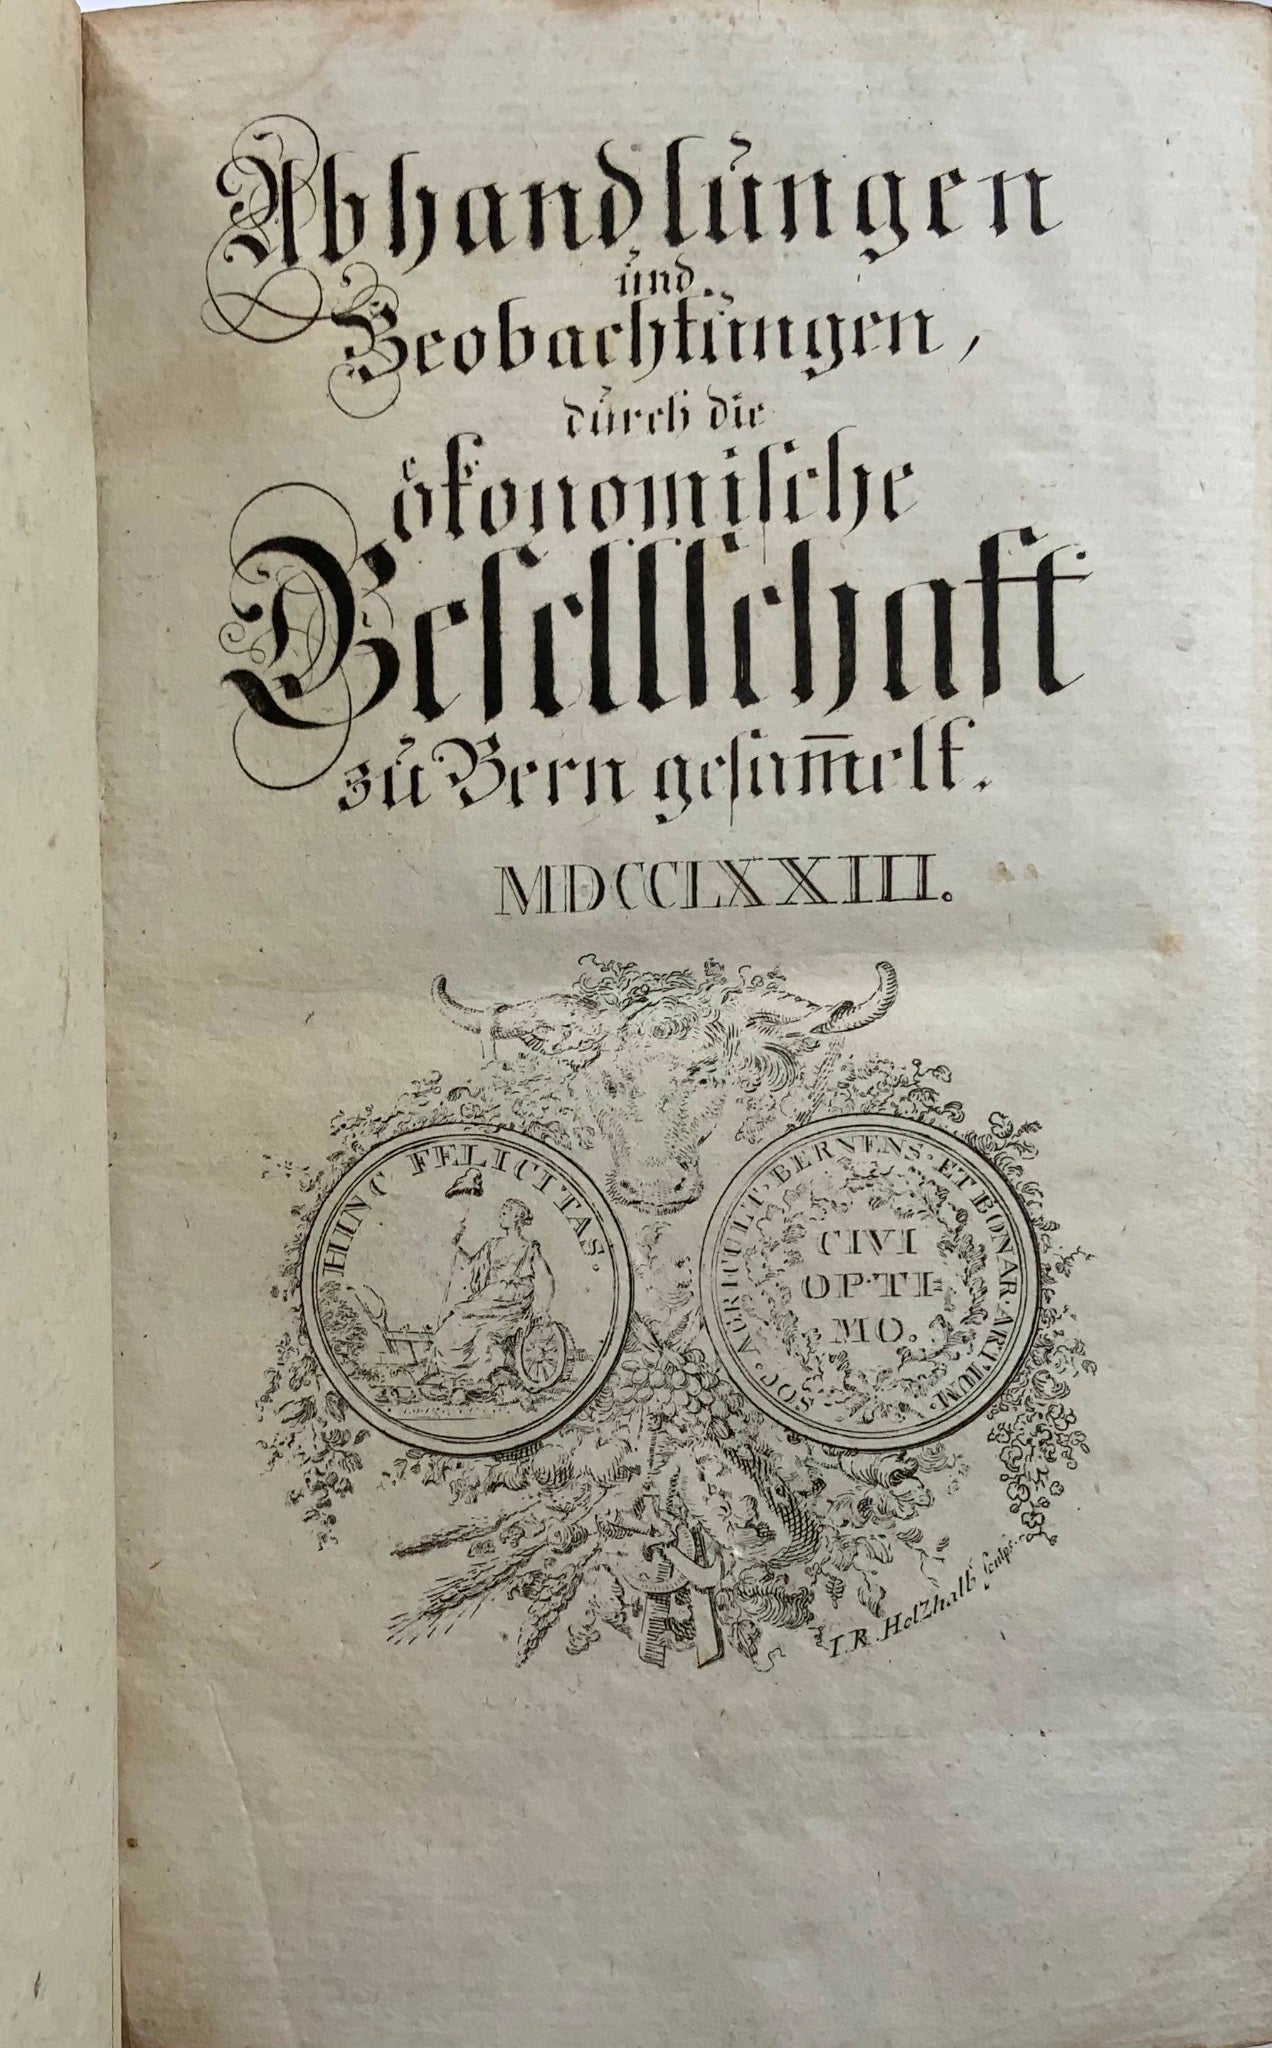 1760-73 Serie completa, Società economica di Berna, Svizzera, riccamente illustrata